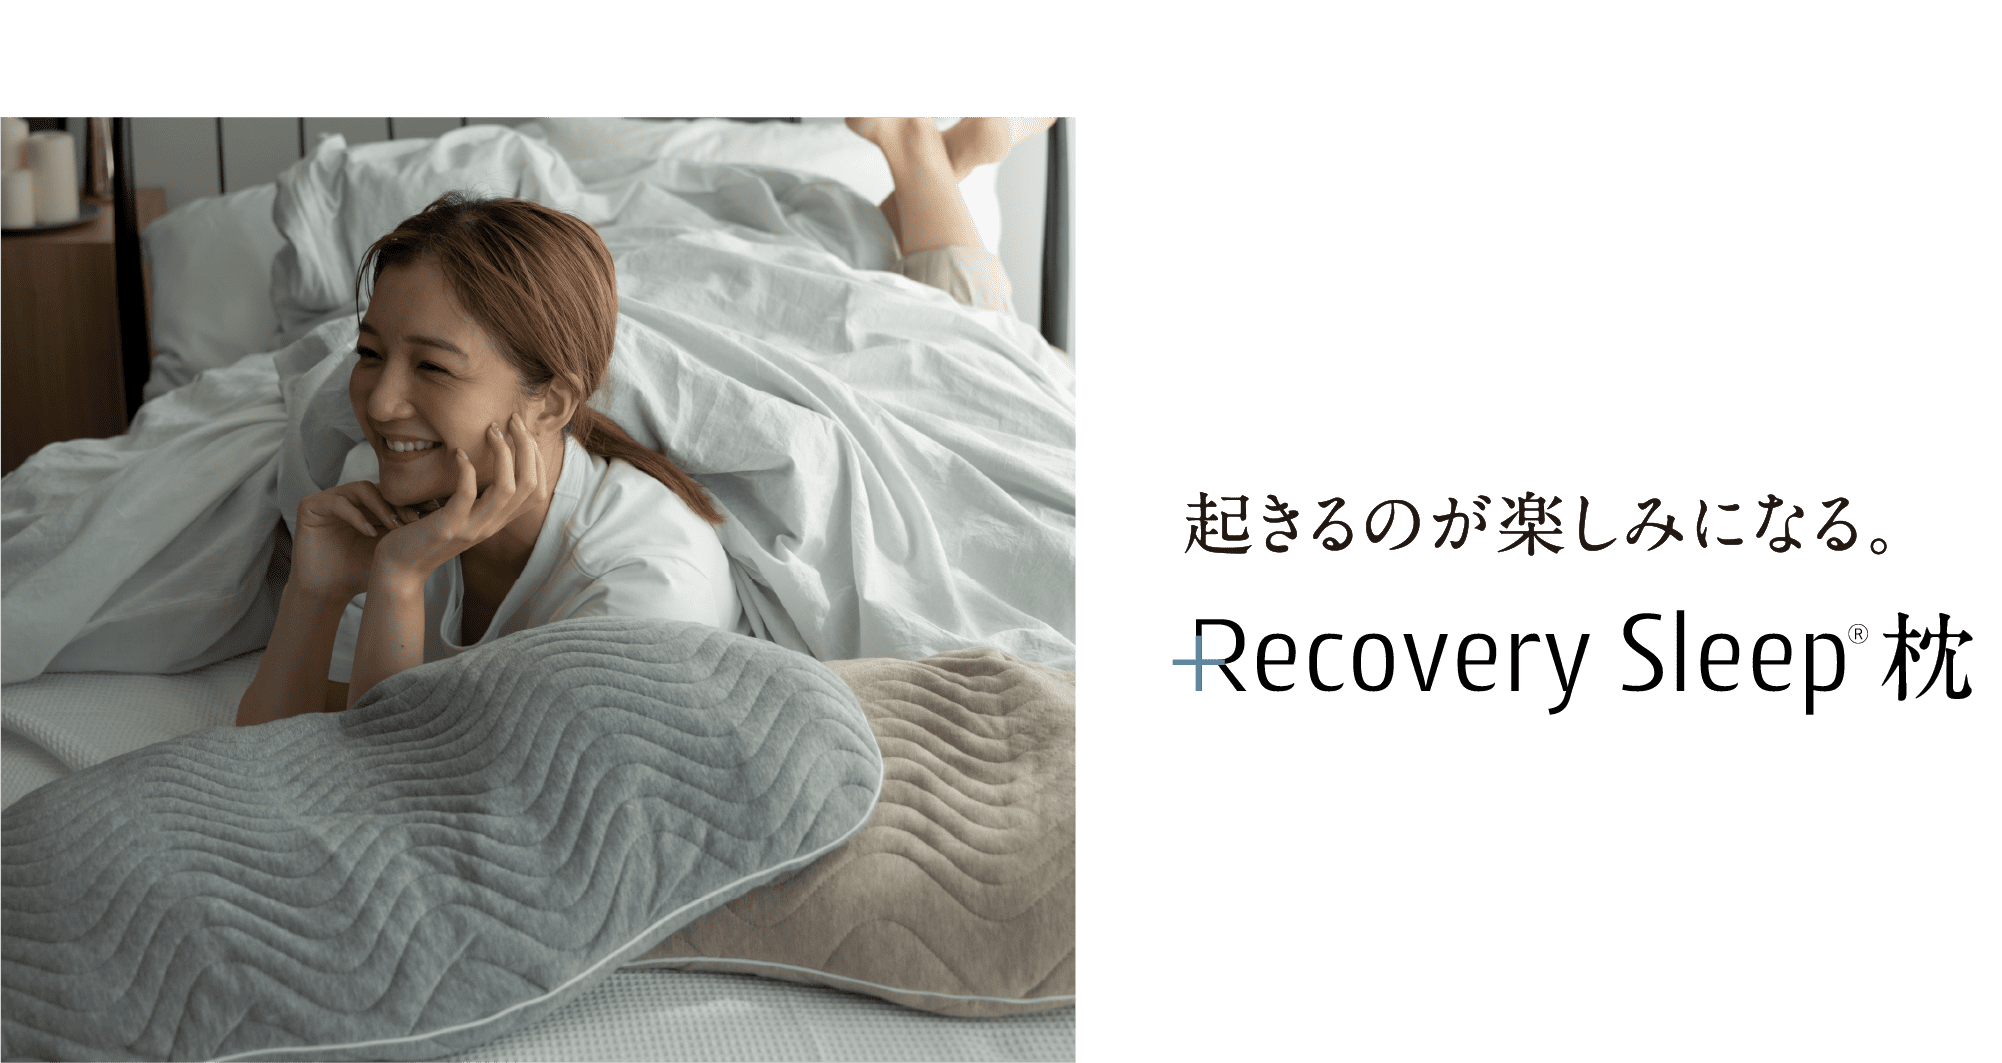 起きるのが楽しみになる。眠っている間に血行促進お手軽に回復力を高める recoverysleep